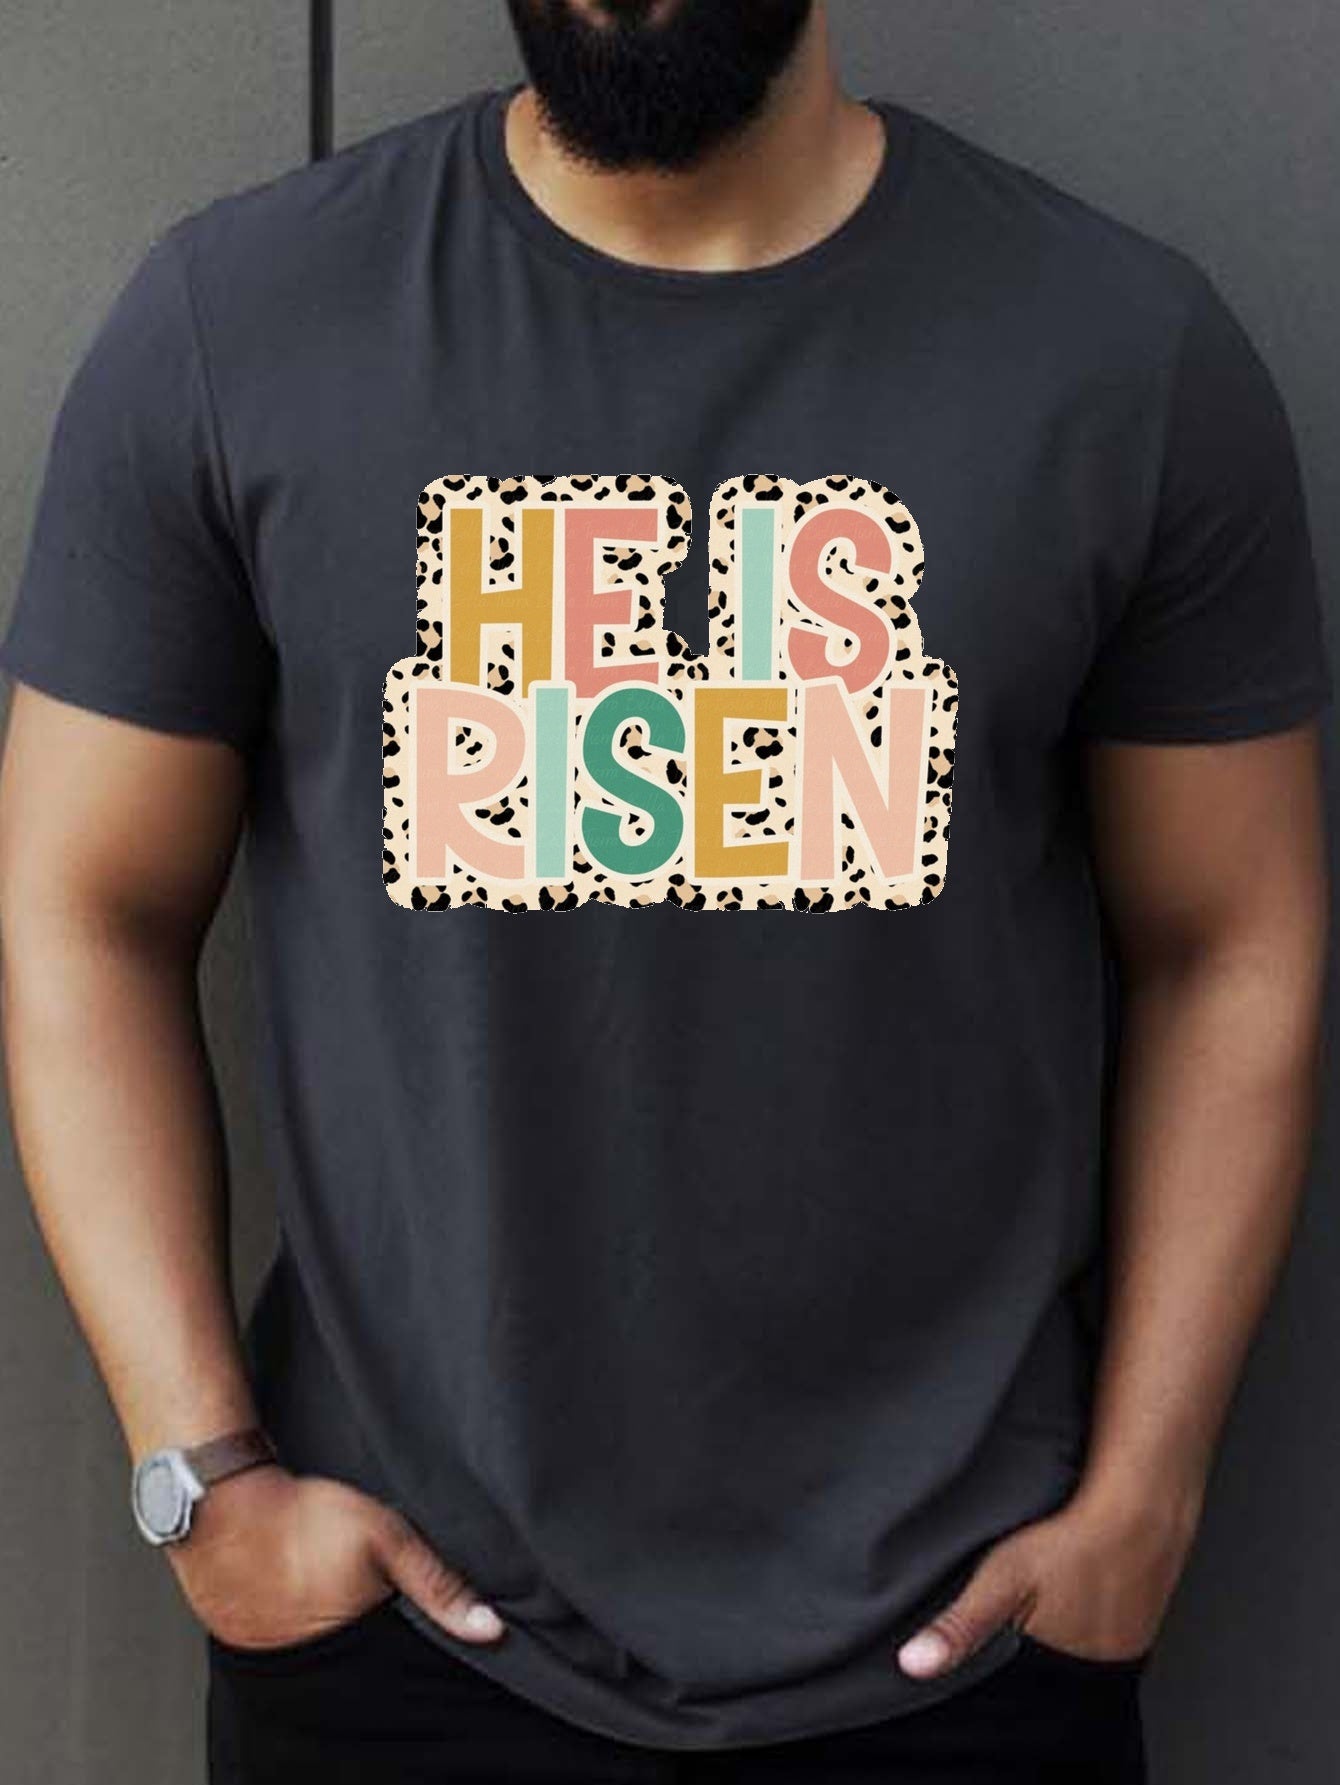 He Is Risen Men's Christian T-Shirt claimedbygoddesigns